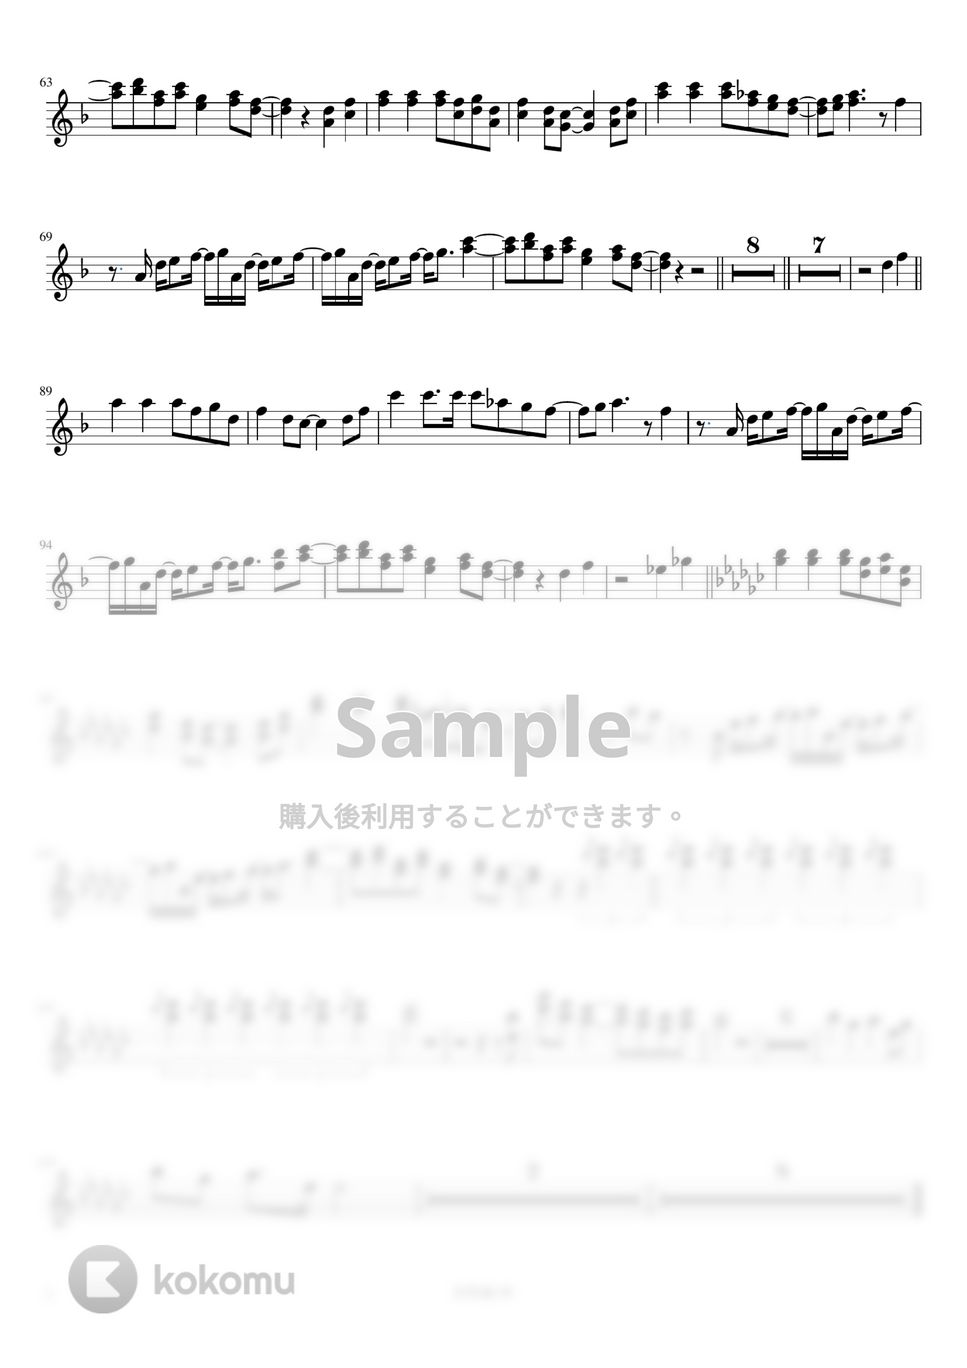 椎名林檎 - 長く短い祭 (B♭クラリネット用メロディー譜) by もりたあいか